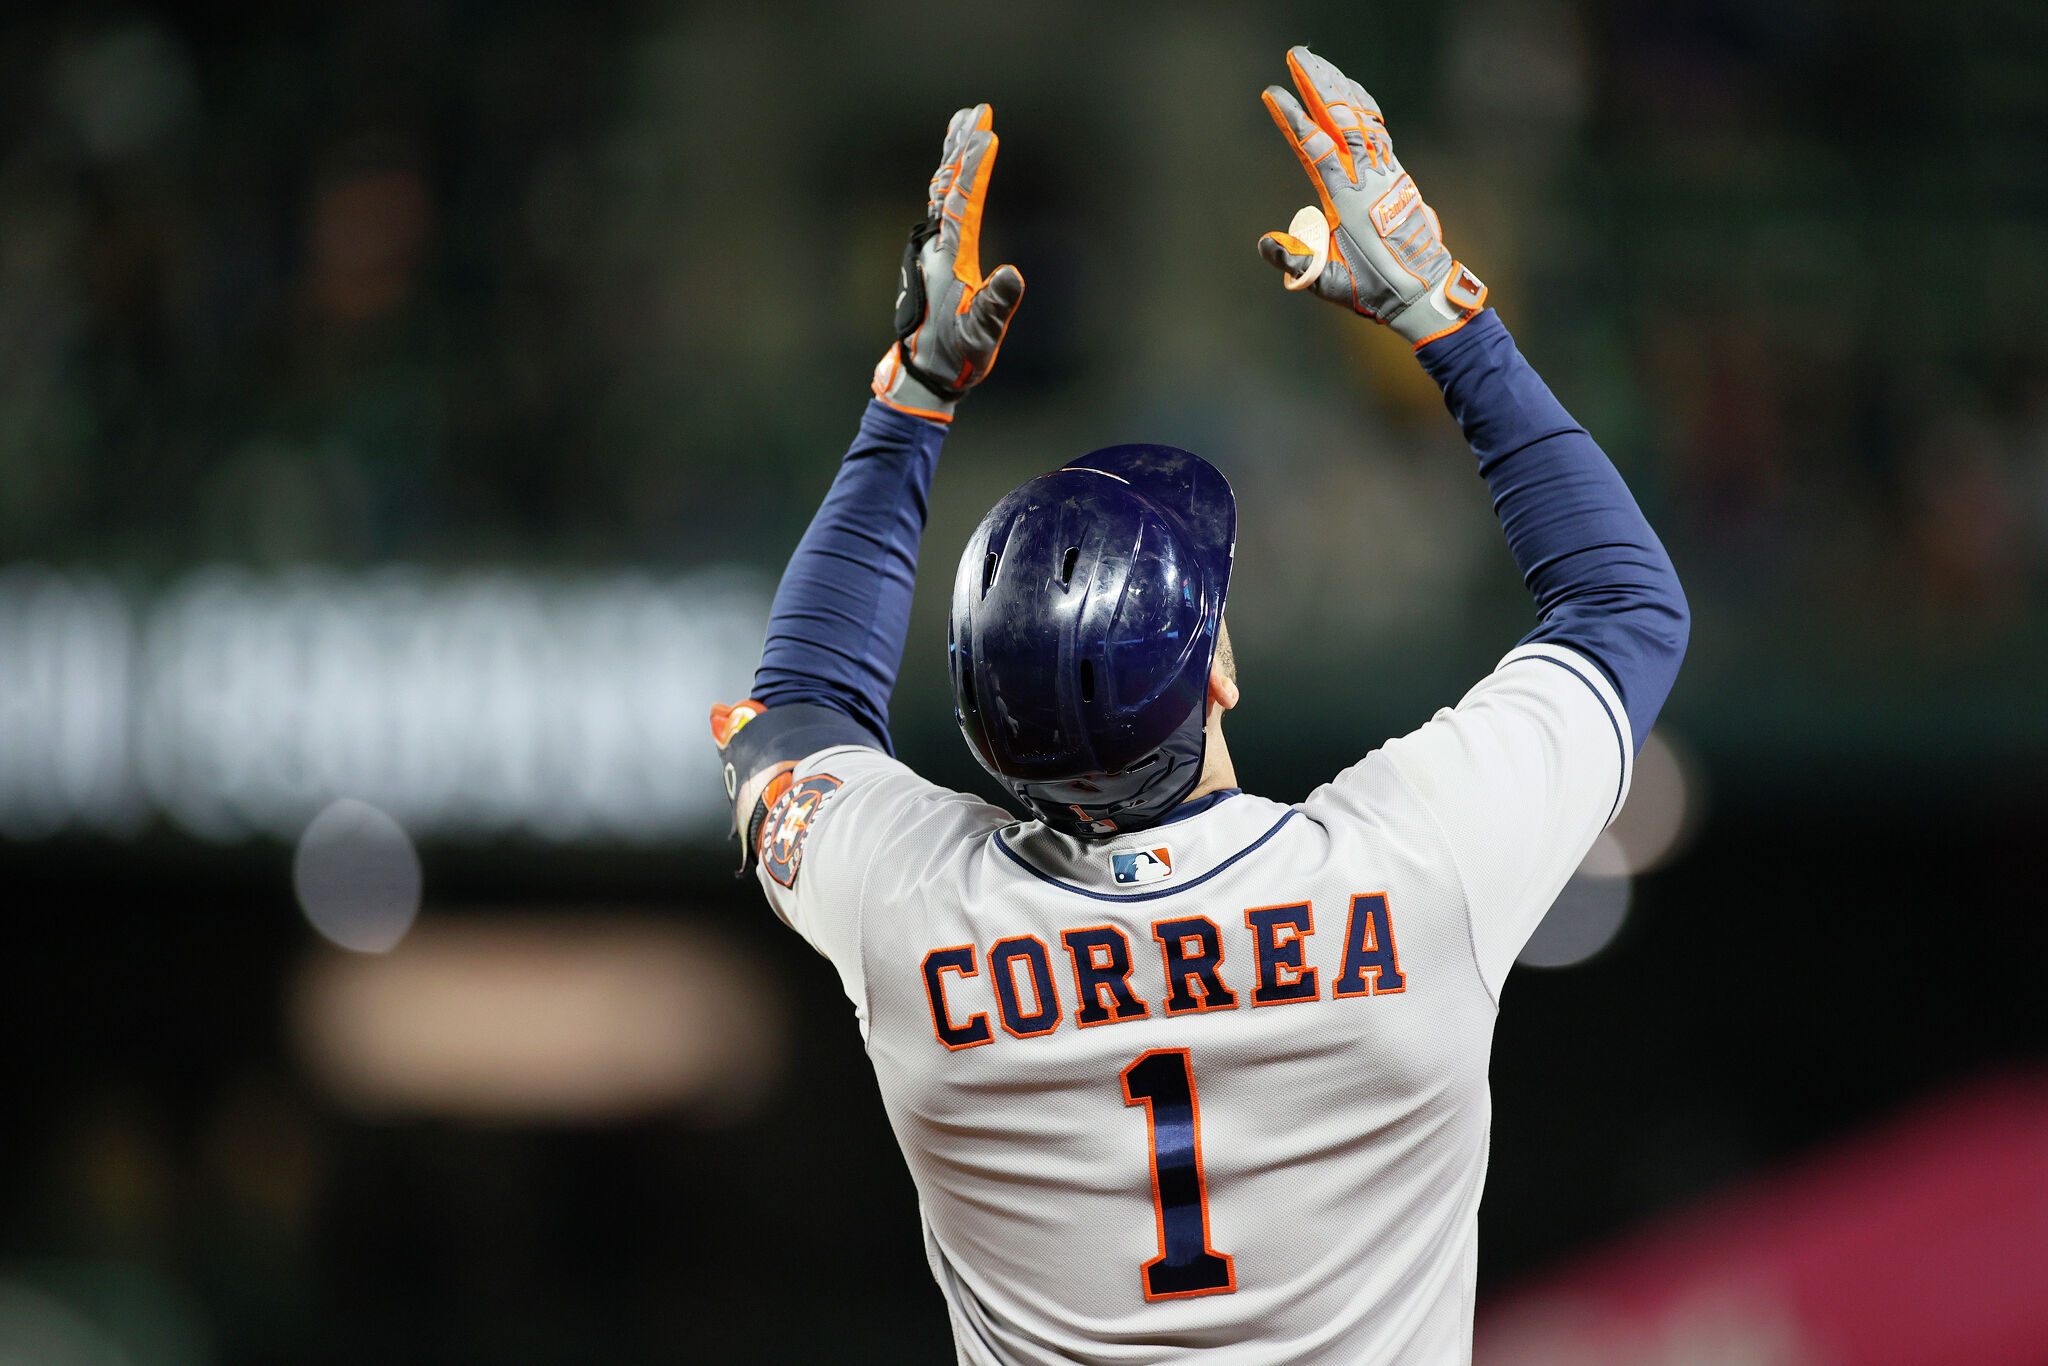 Sneak peek of Correa in an Astros jersey. : r/Astros